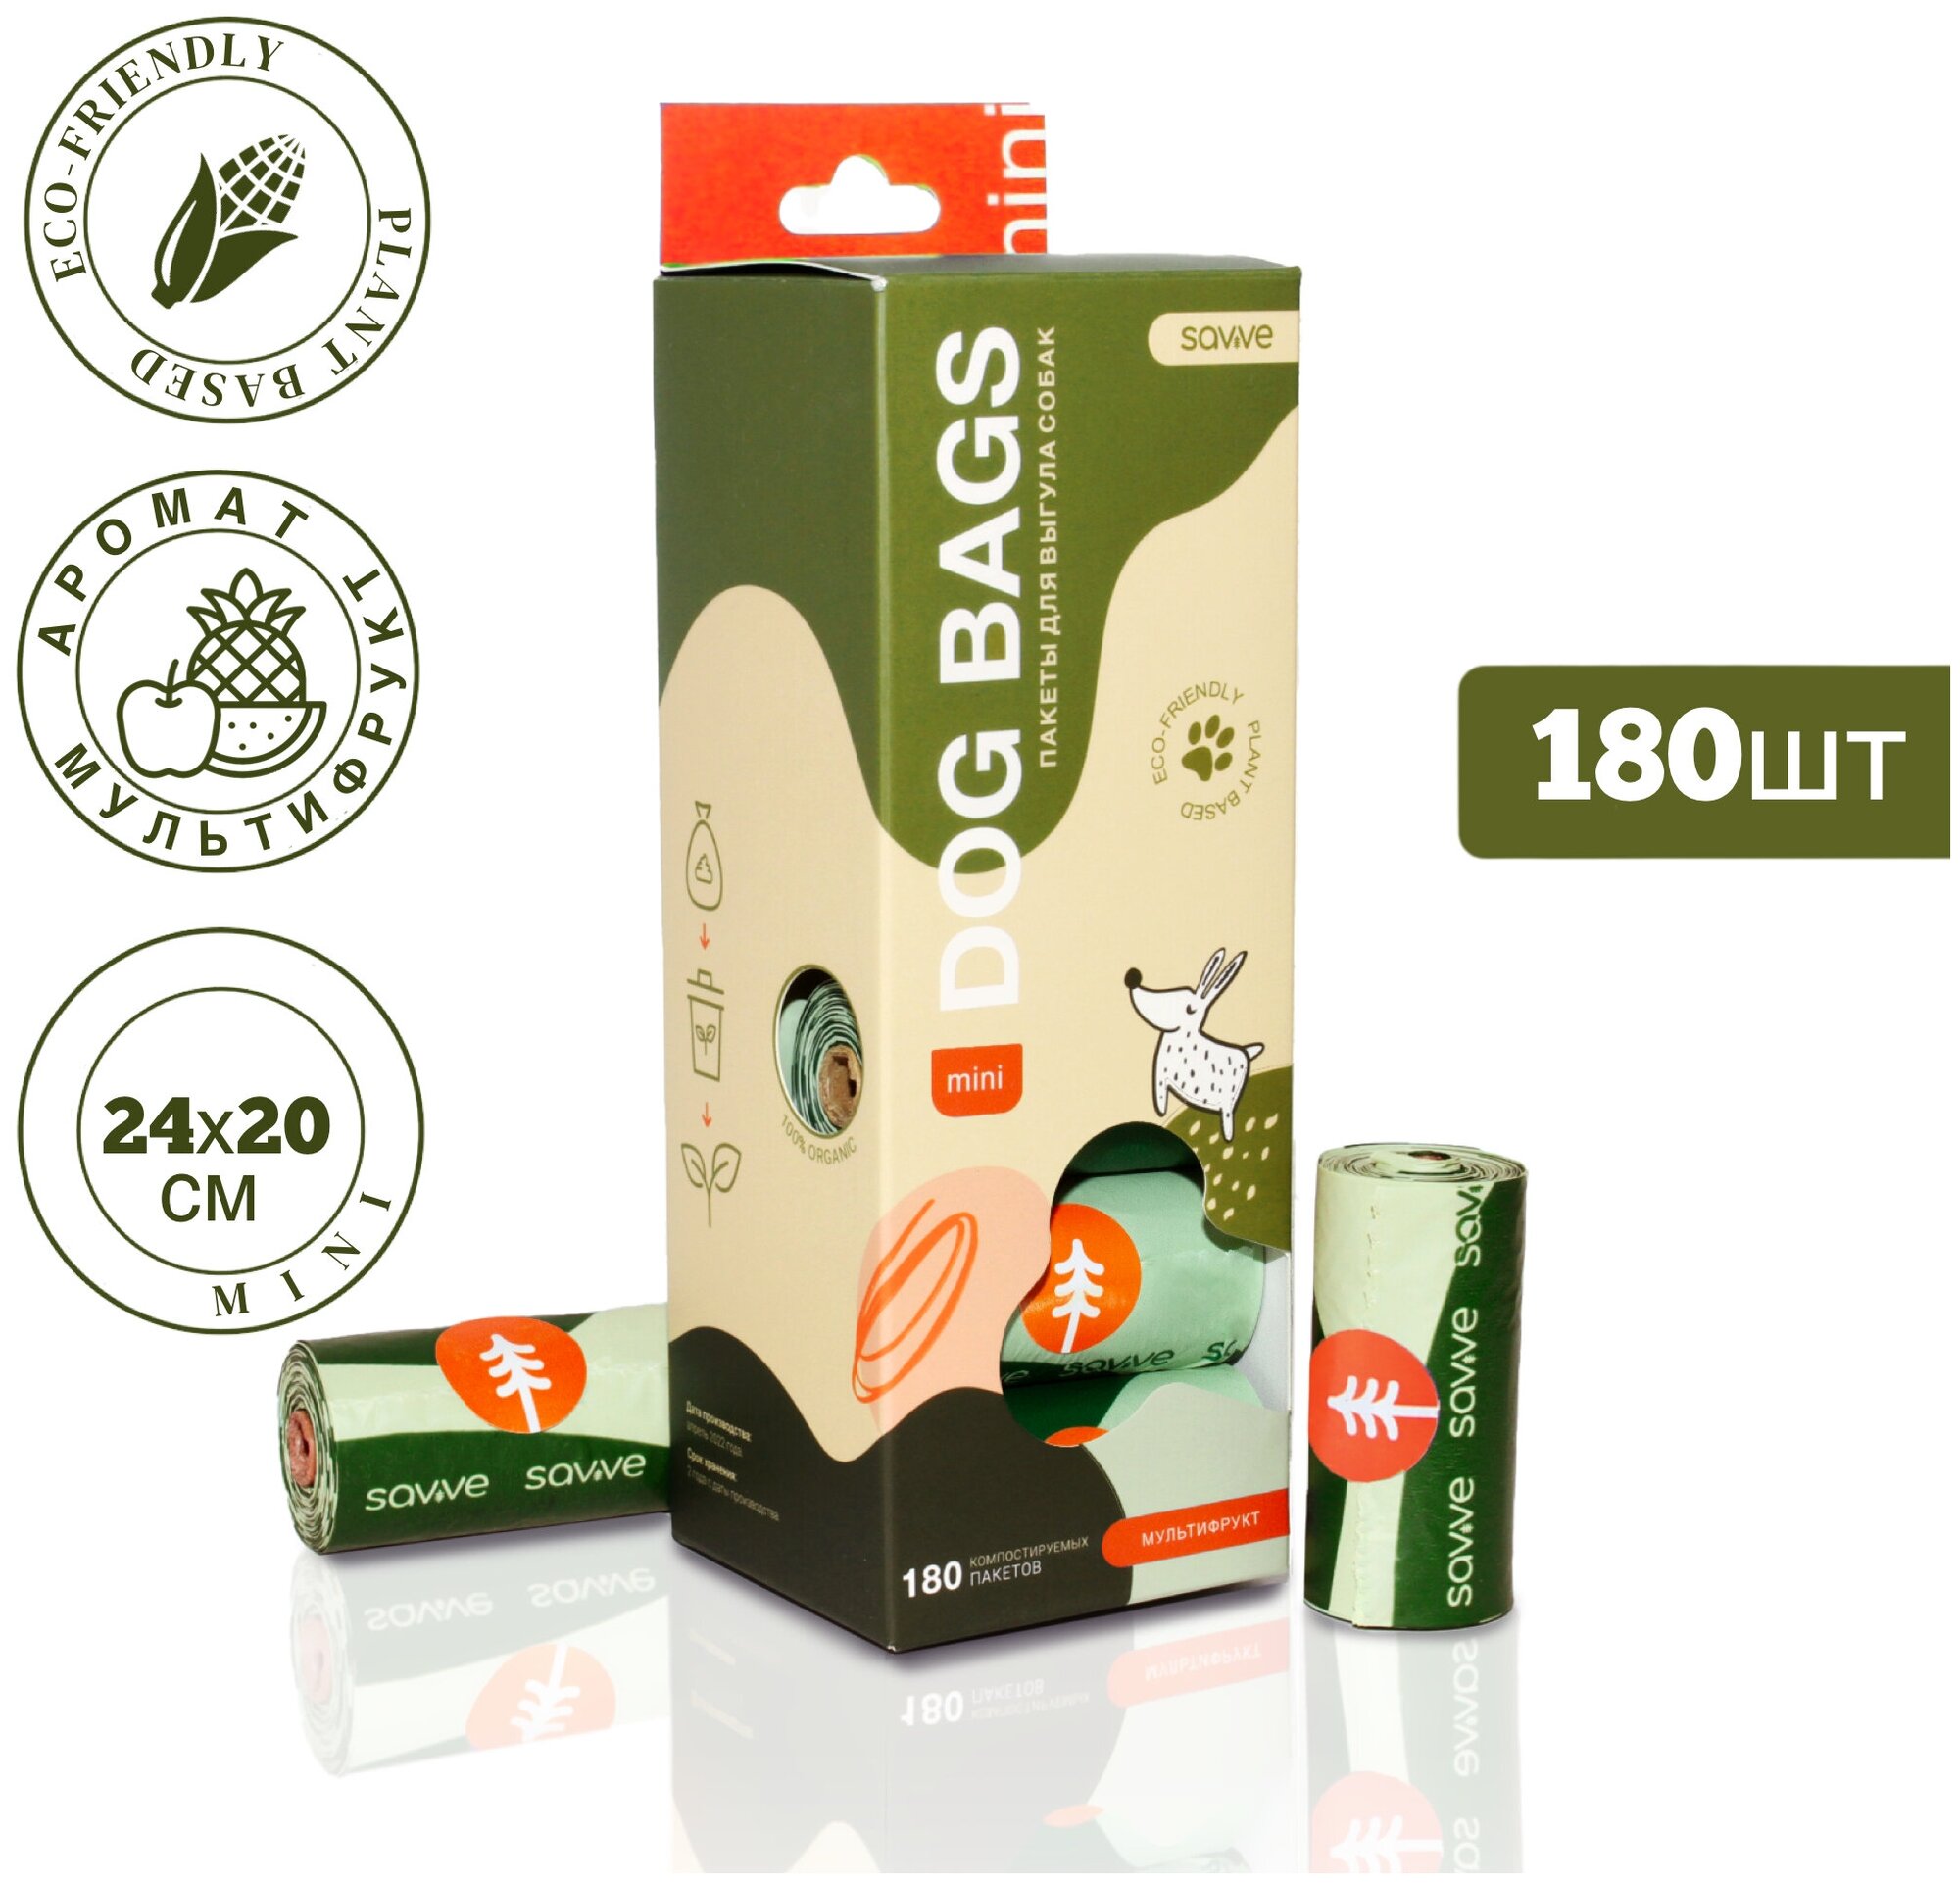 Биоразлагаемые пакеты SAVVE Mini на органической основе для выгула собак, мультифрукт, 180 штук